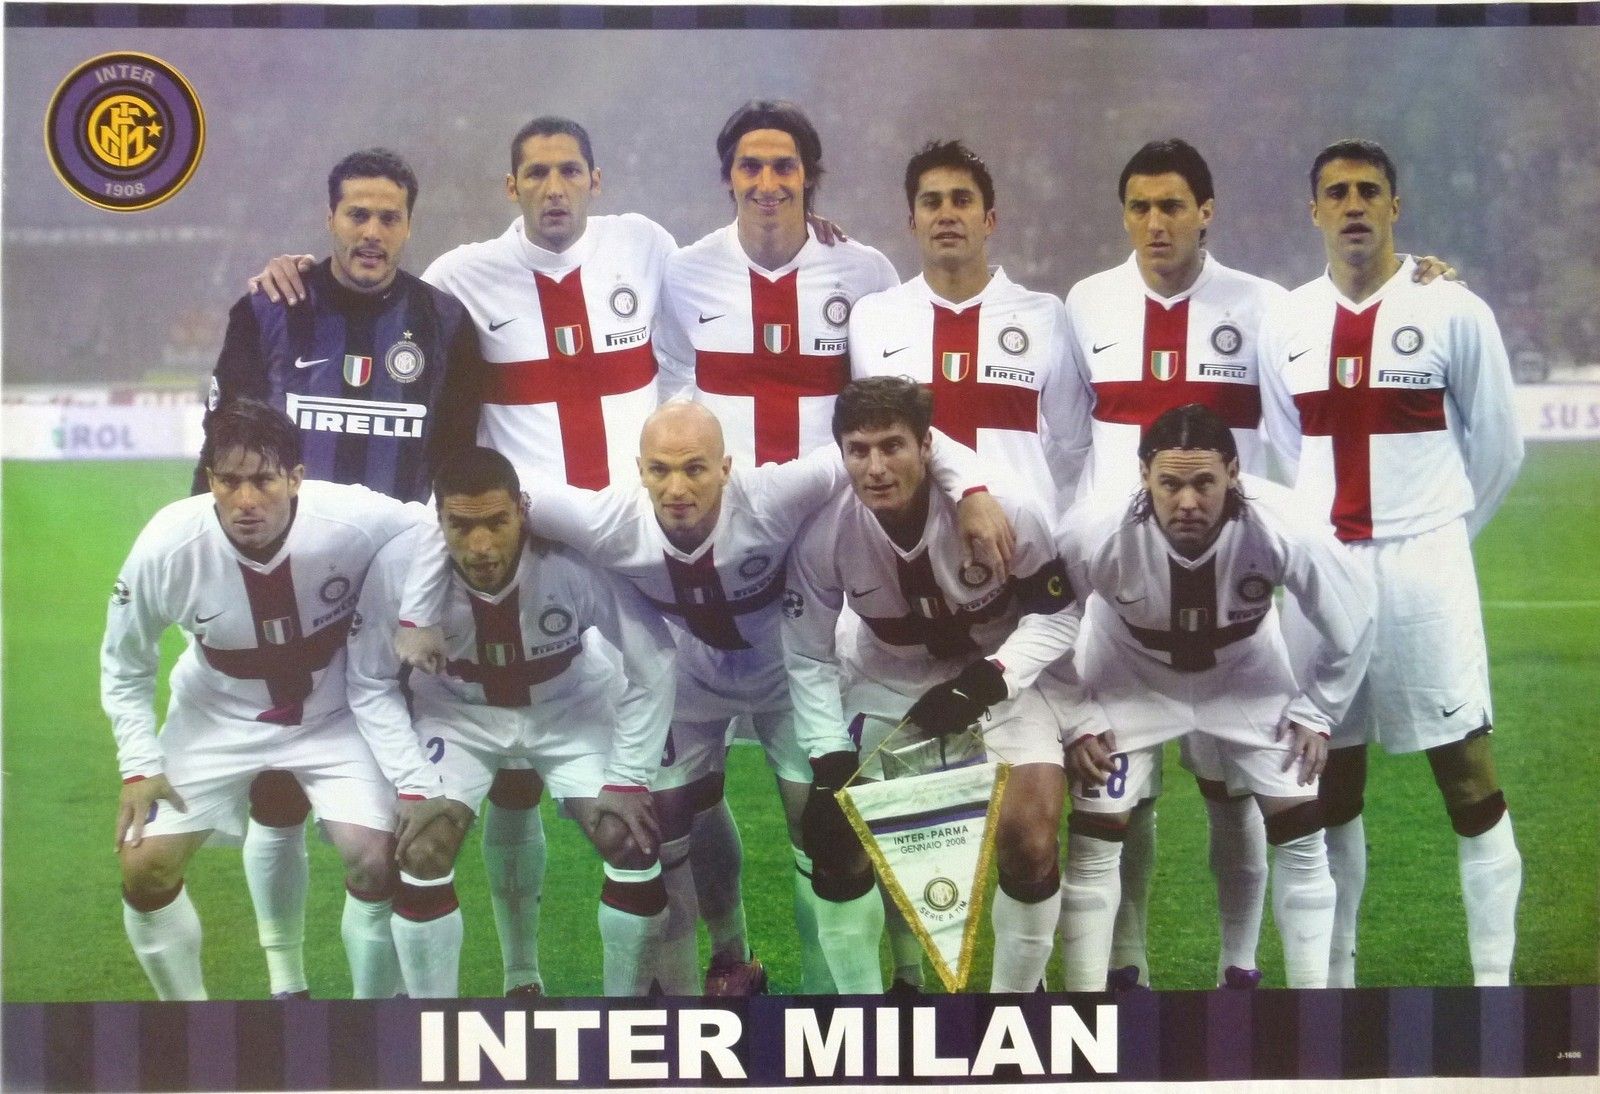 07-08 Inter Milan Away White&Red Retro Jerseys Shirt